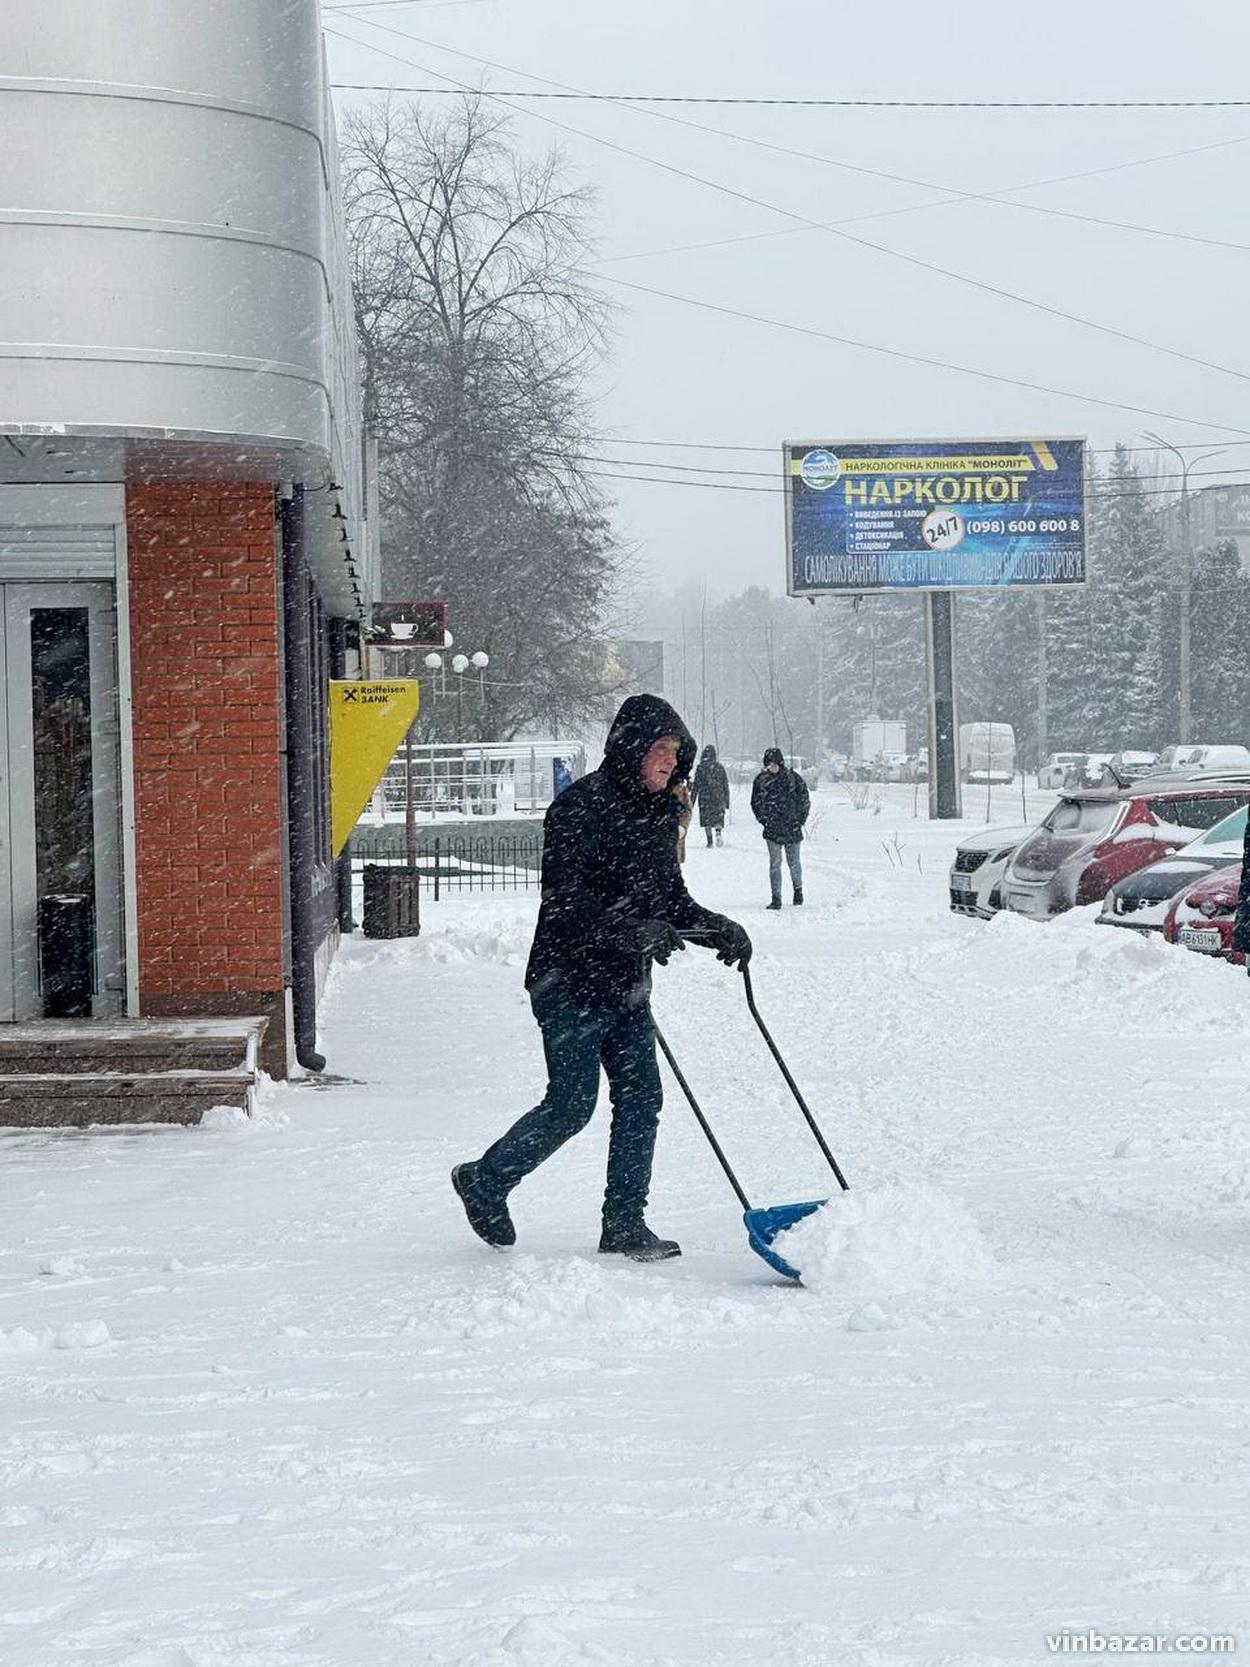 Снігопад накрив Вінницю: у місті затори та засипані тротуари (Фото)